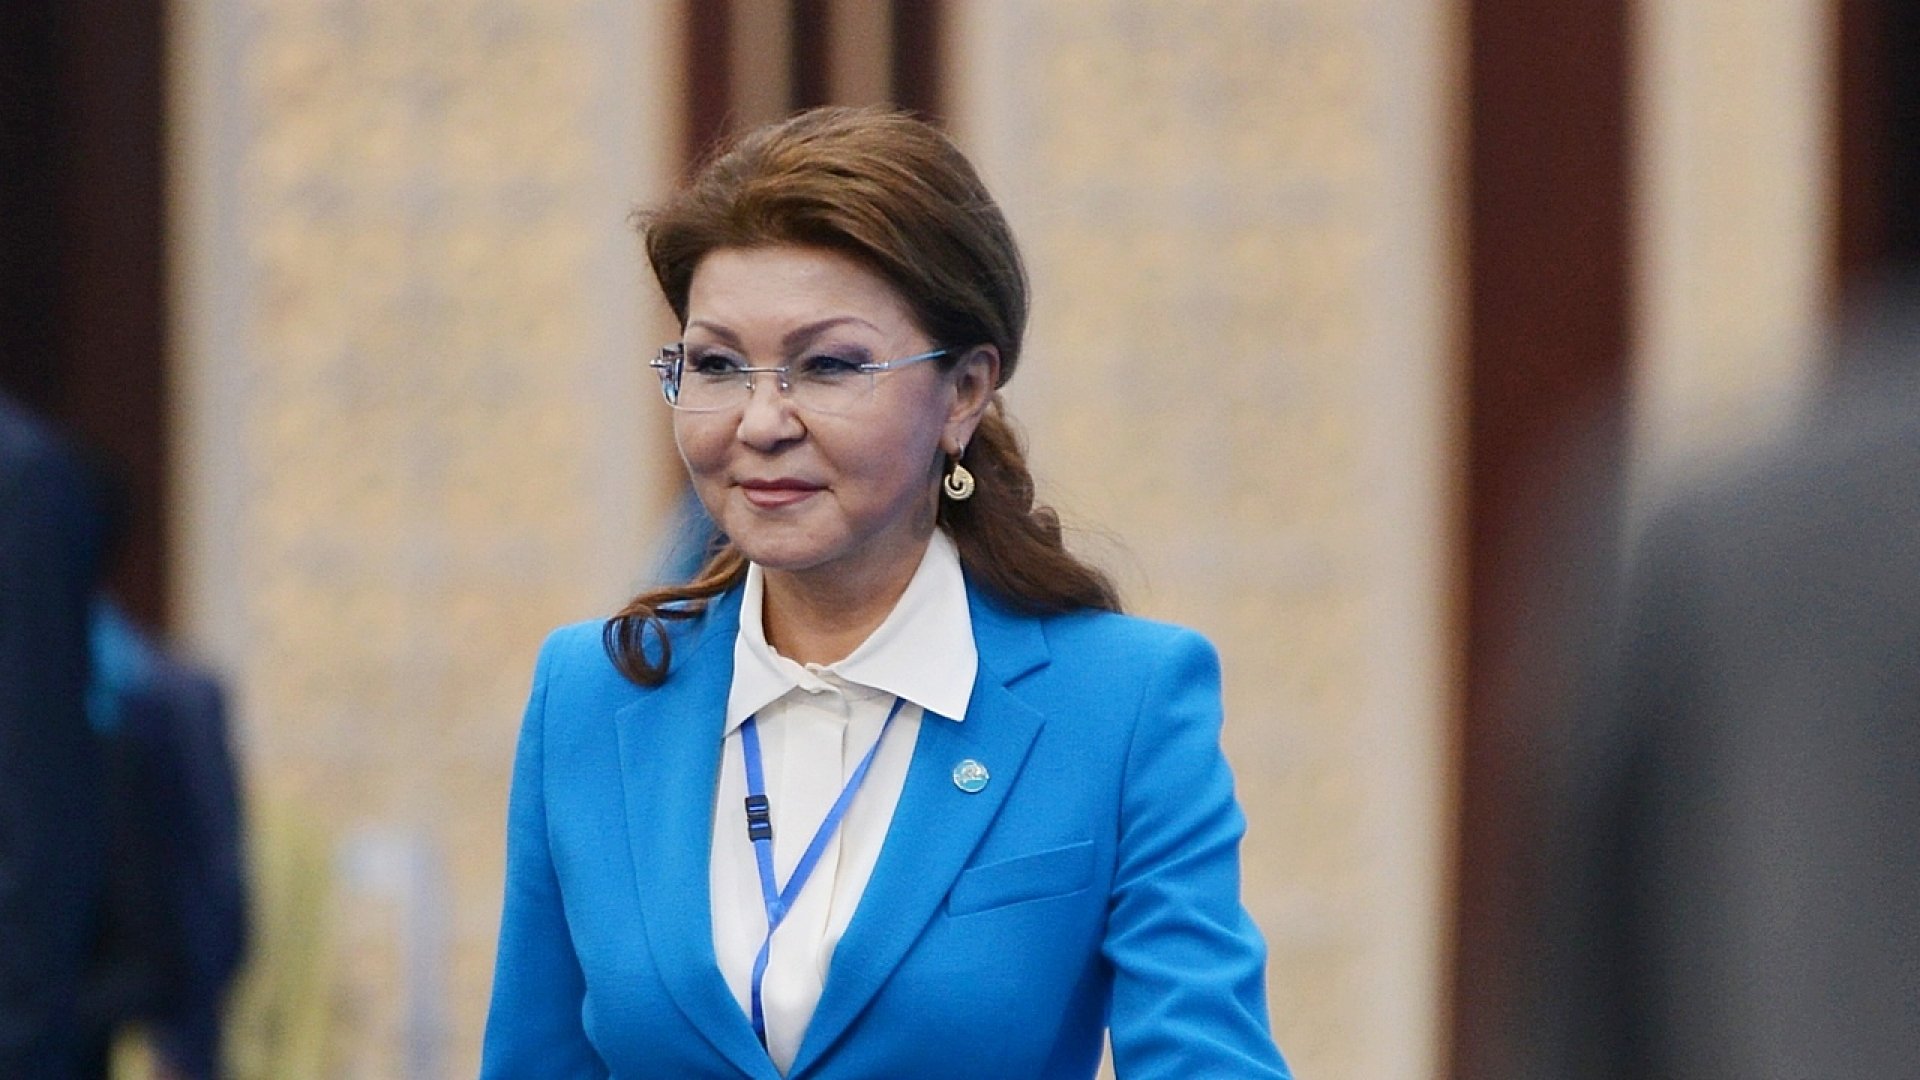 Дочь Назарбаева стала спикером Сената Казахстана